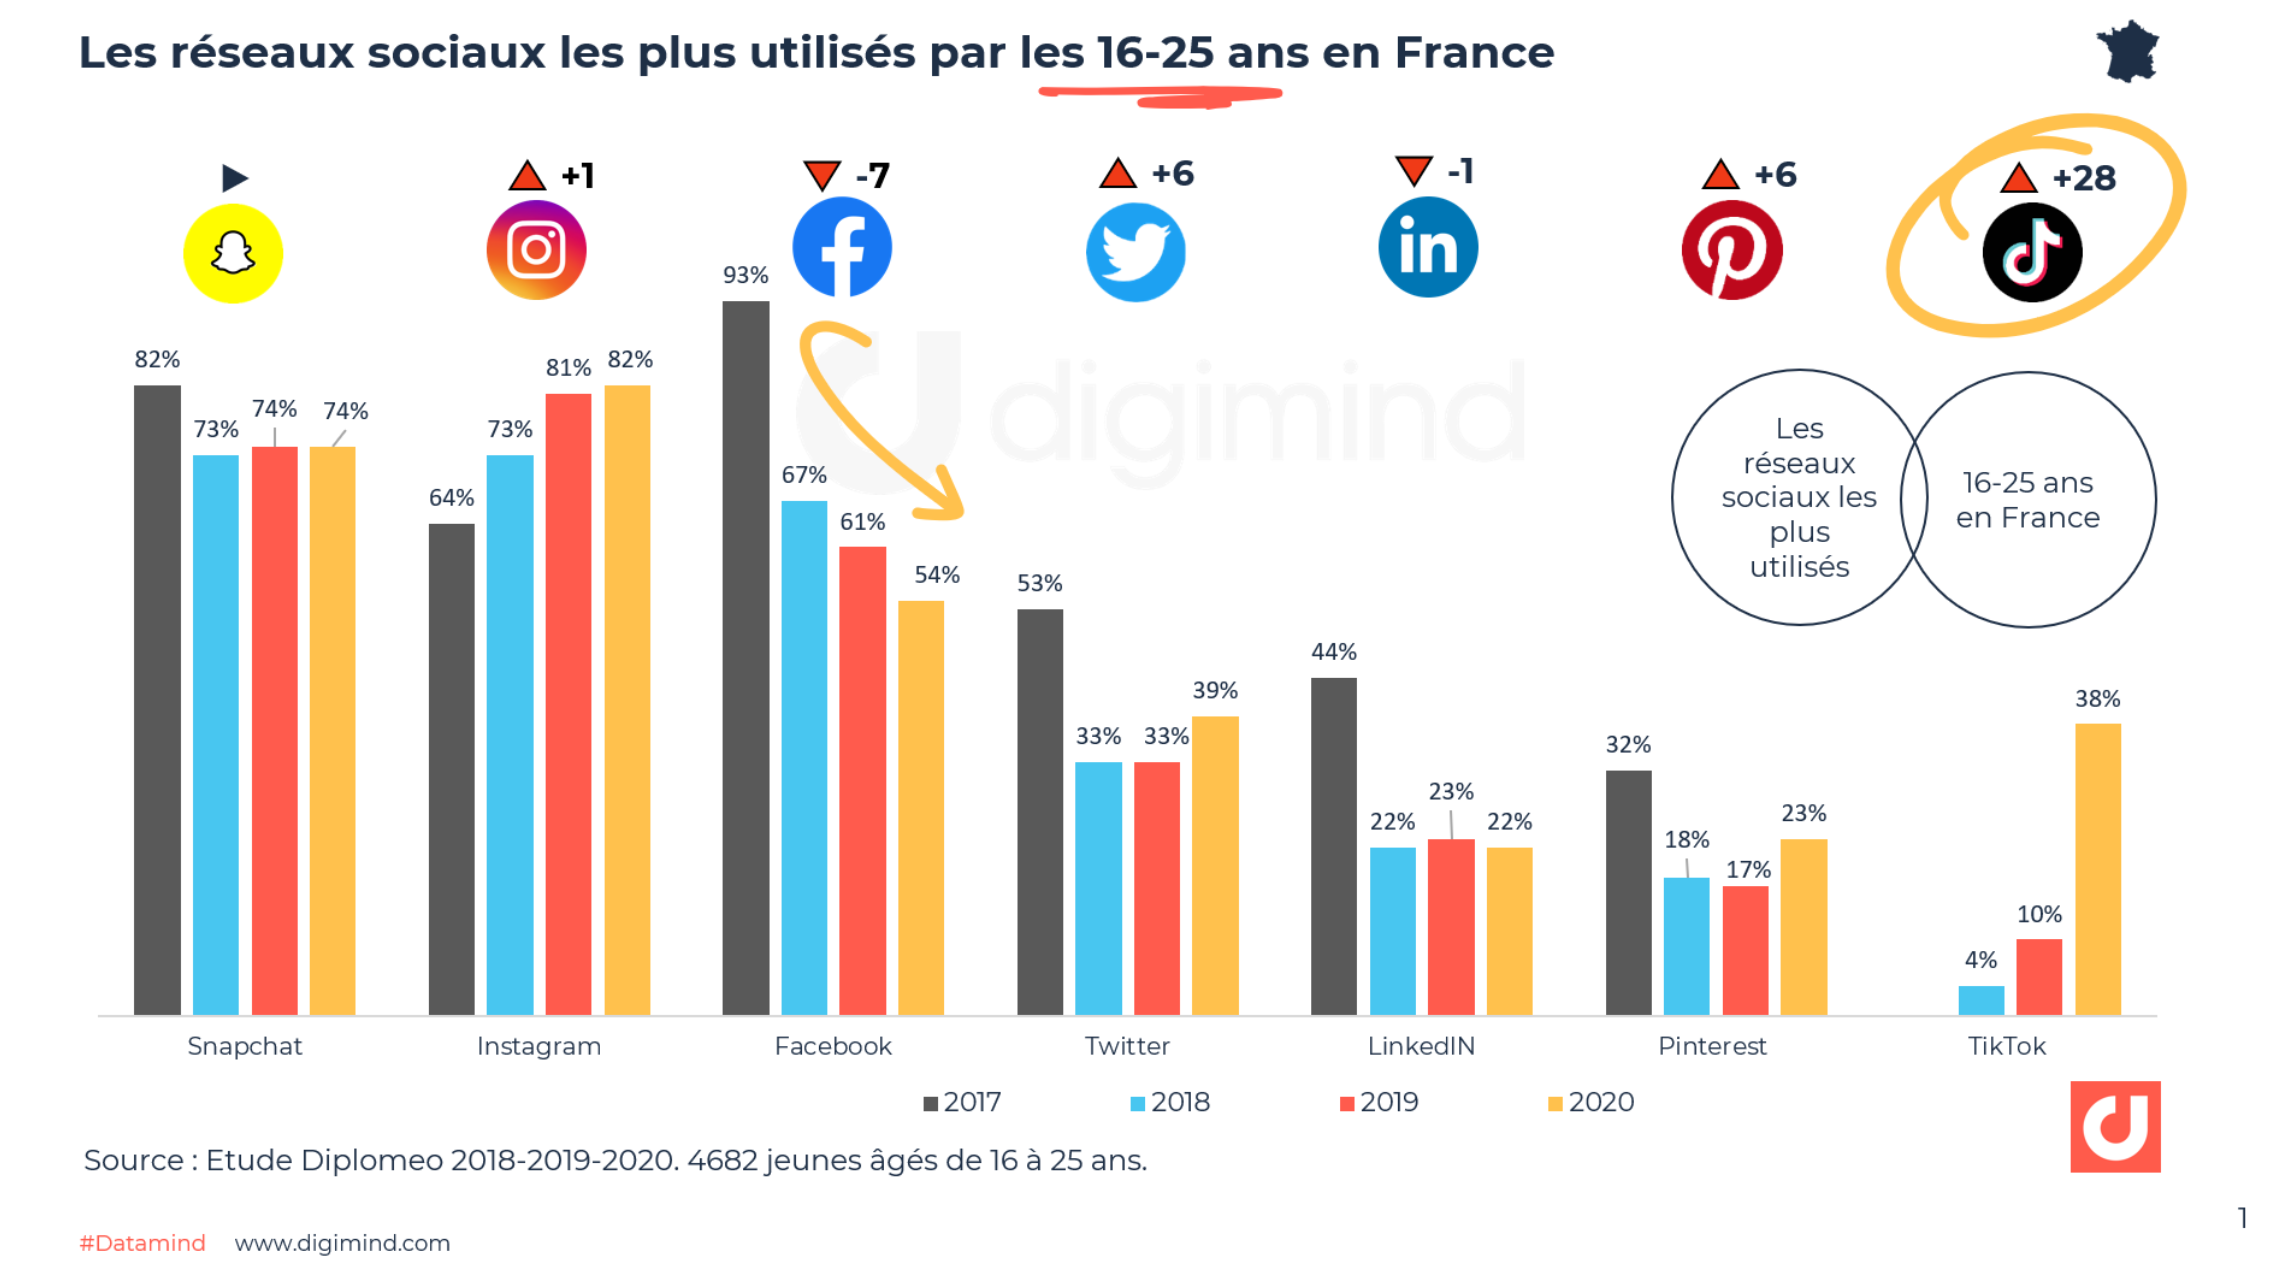 Les réseaux sociaux les plus utilisés par les 16-25 ans en France - Diplomeo